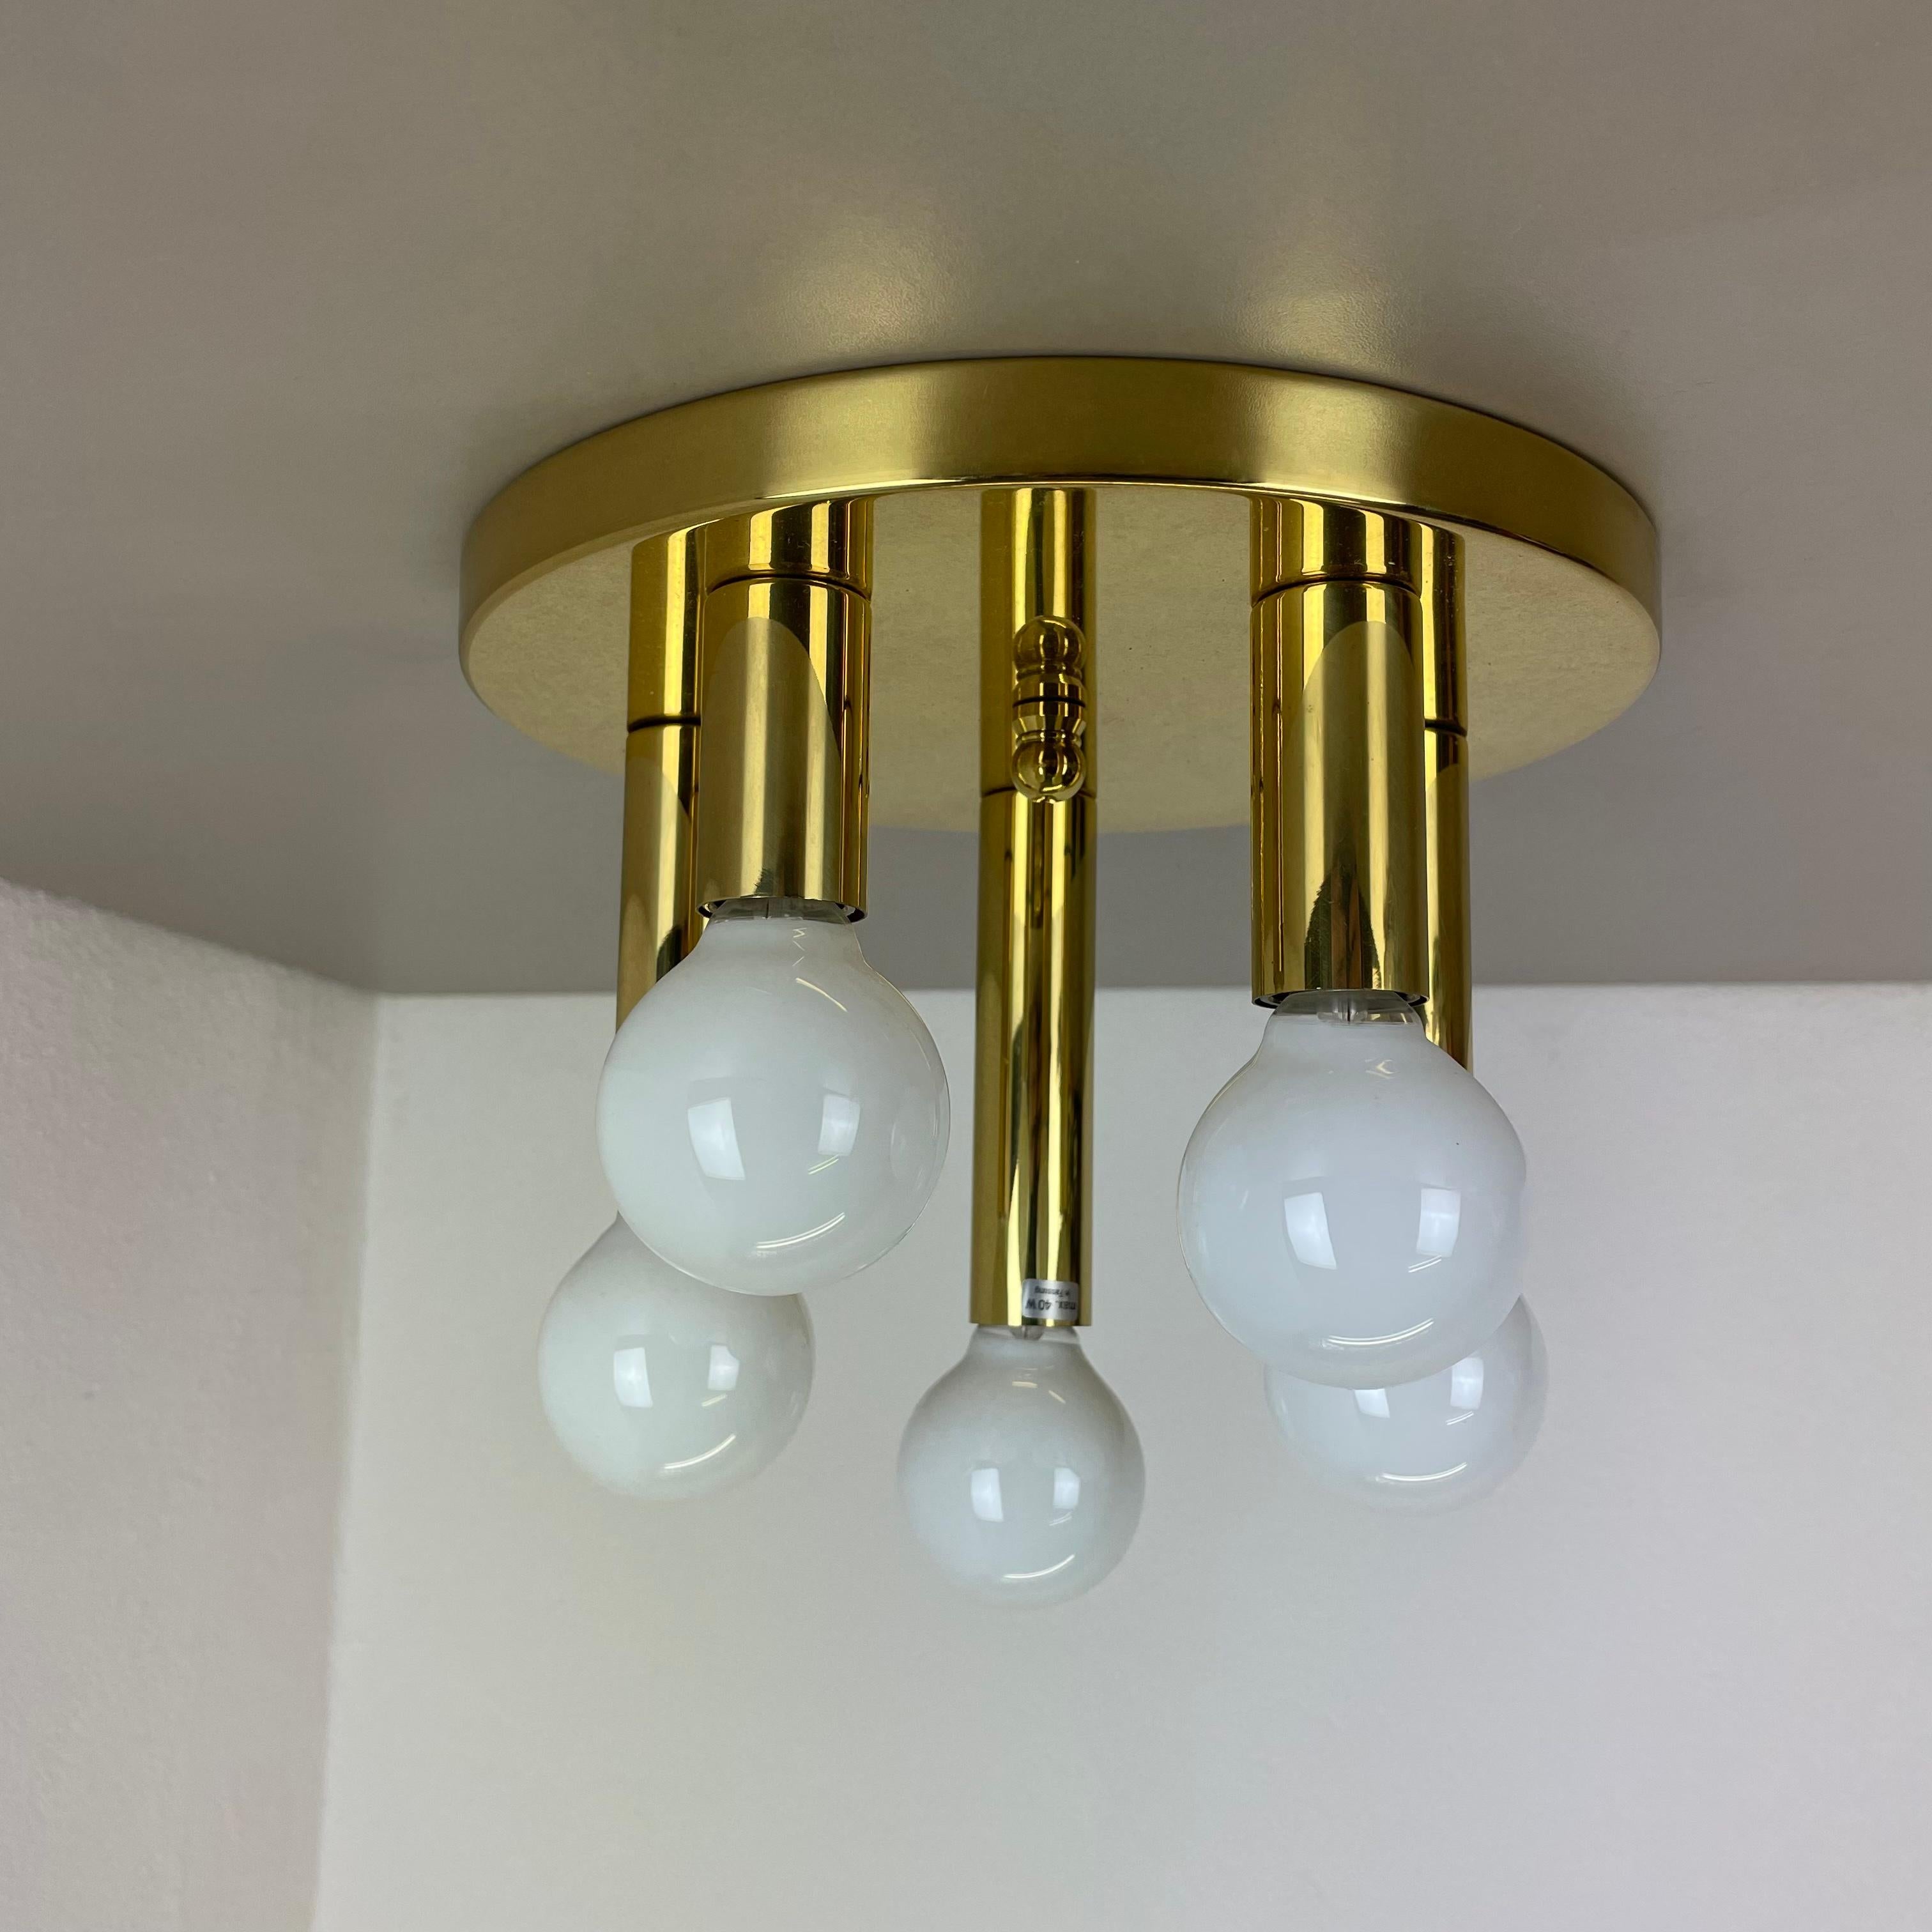 Round Brass Sciolari Style Wall Ceiling Light Sölken Leuchten, Germany, 1980 For Sale 11